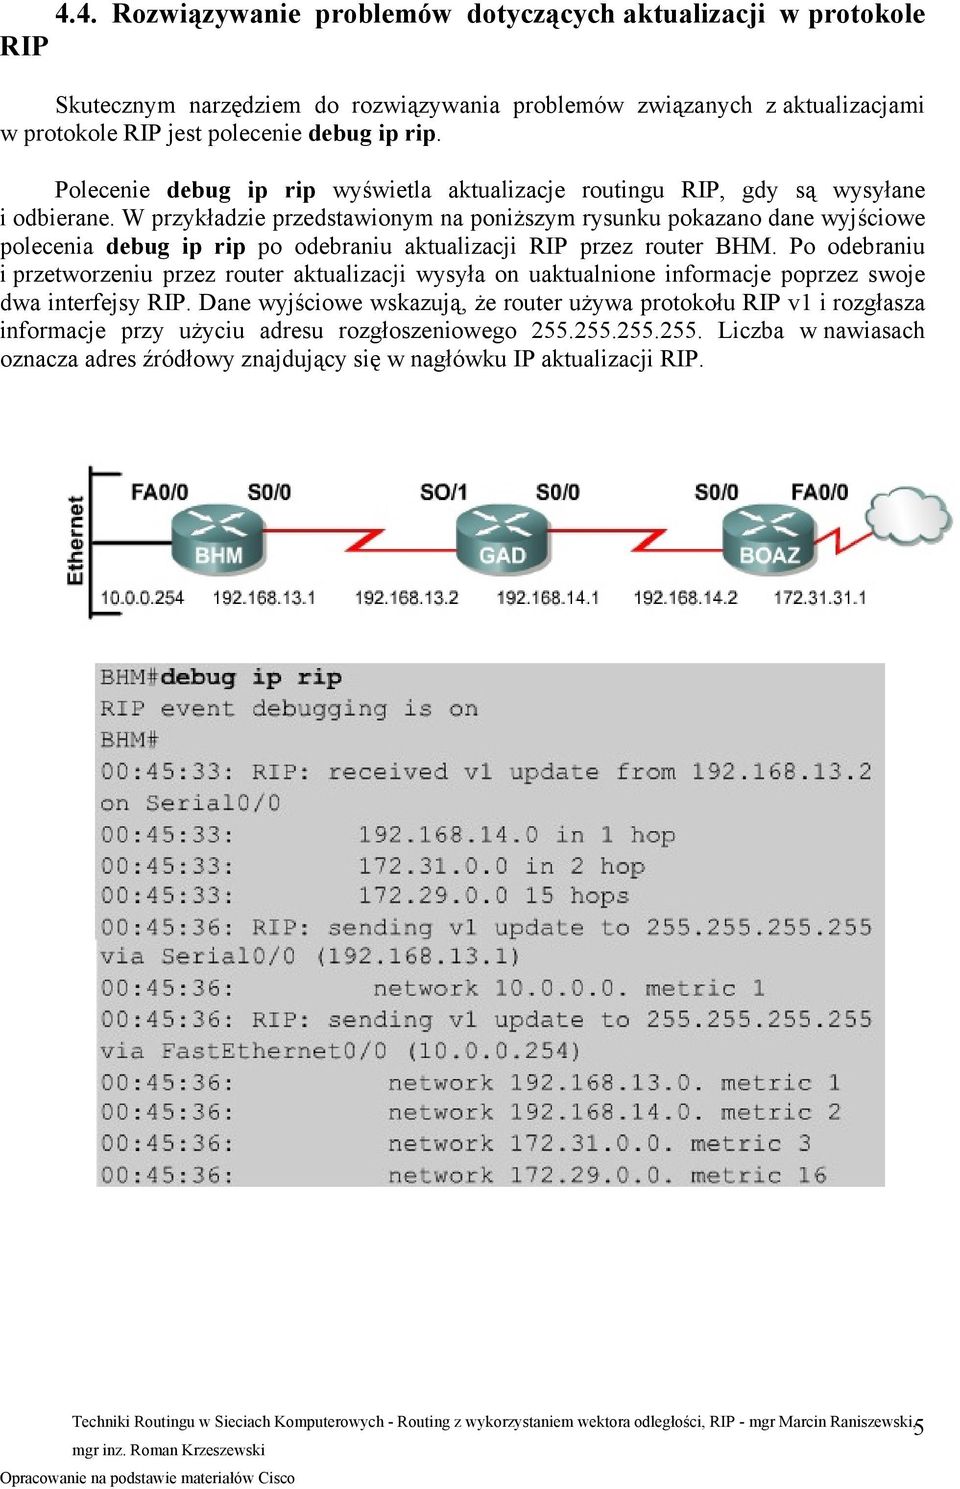 W przykładzie przedstawionym na poniższym rysunku pokazano dane wyjściowe polecenia debug ip rip po odebraniu aktualizacji RIP przez router BHM.